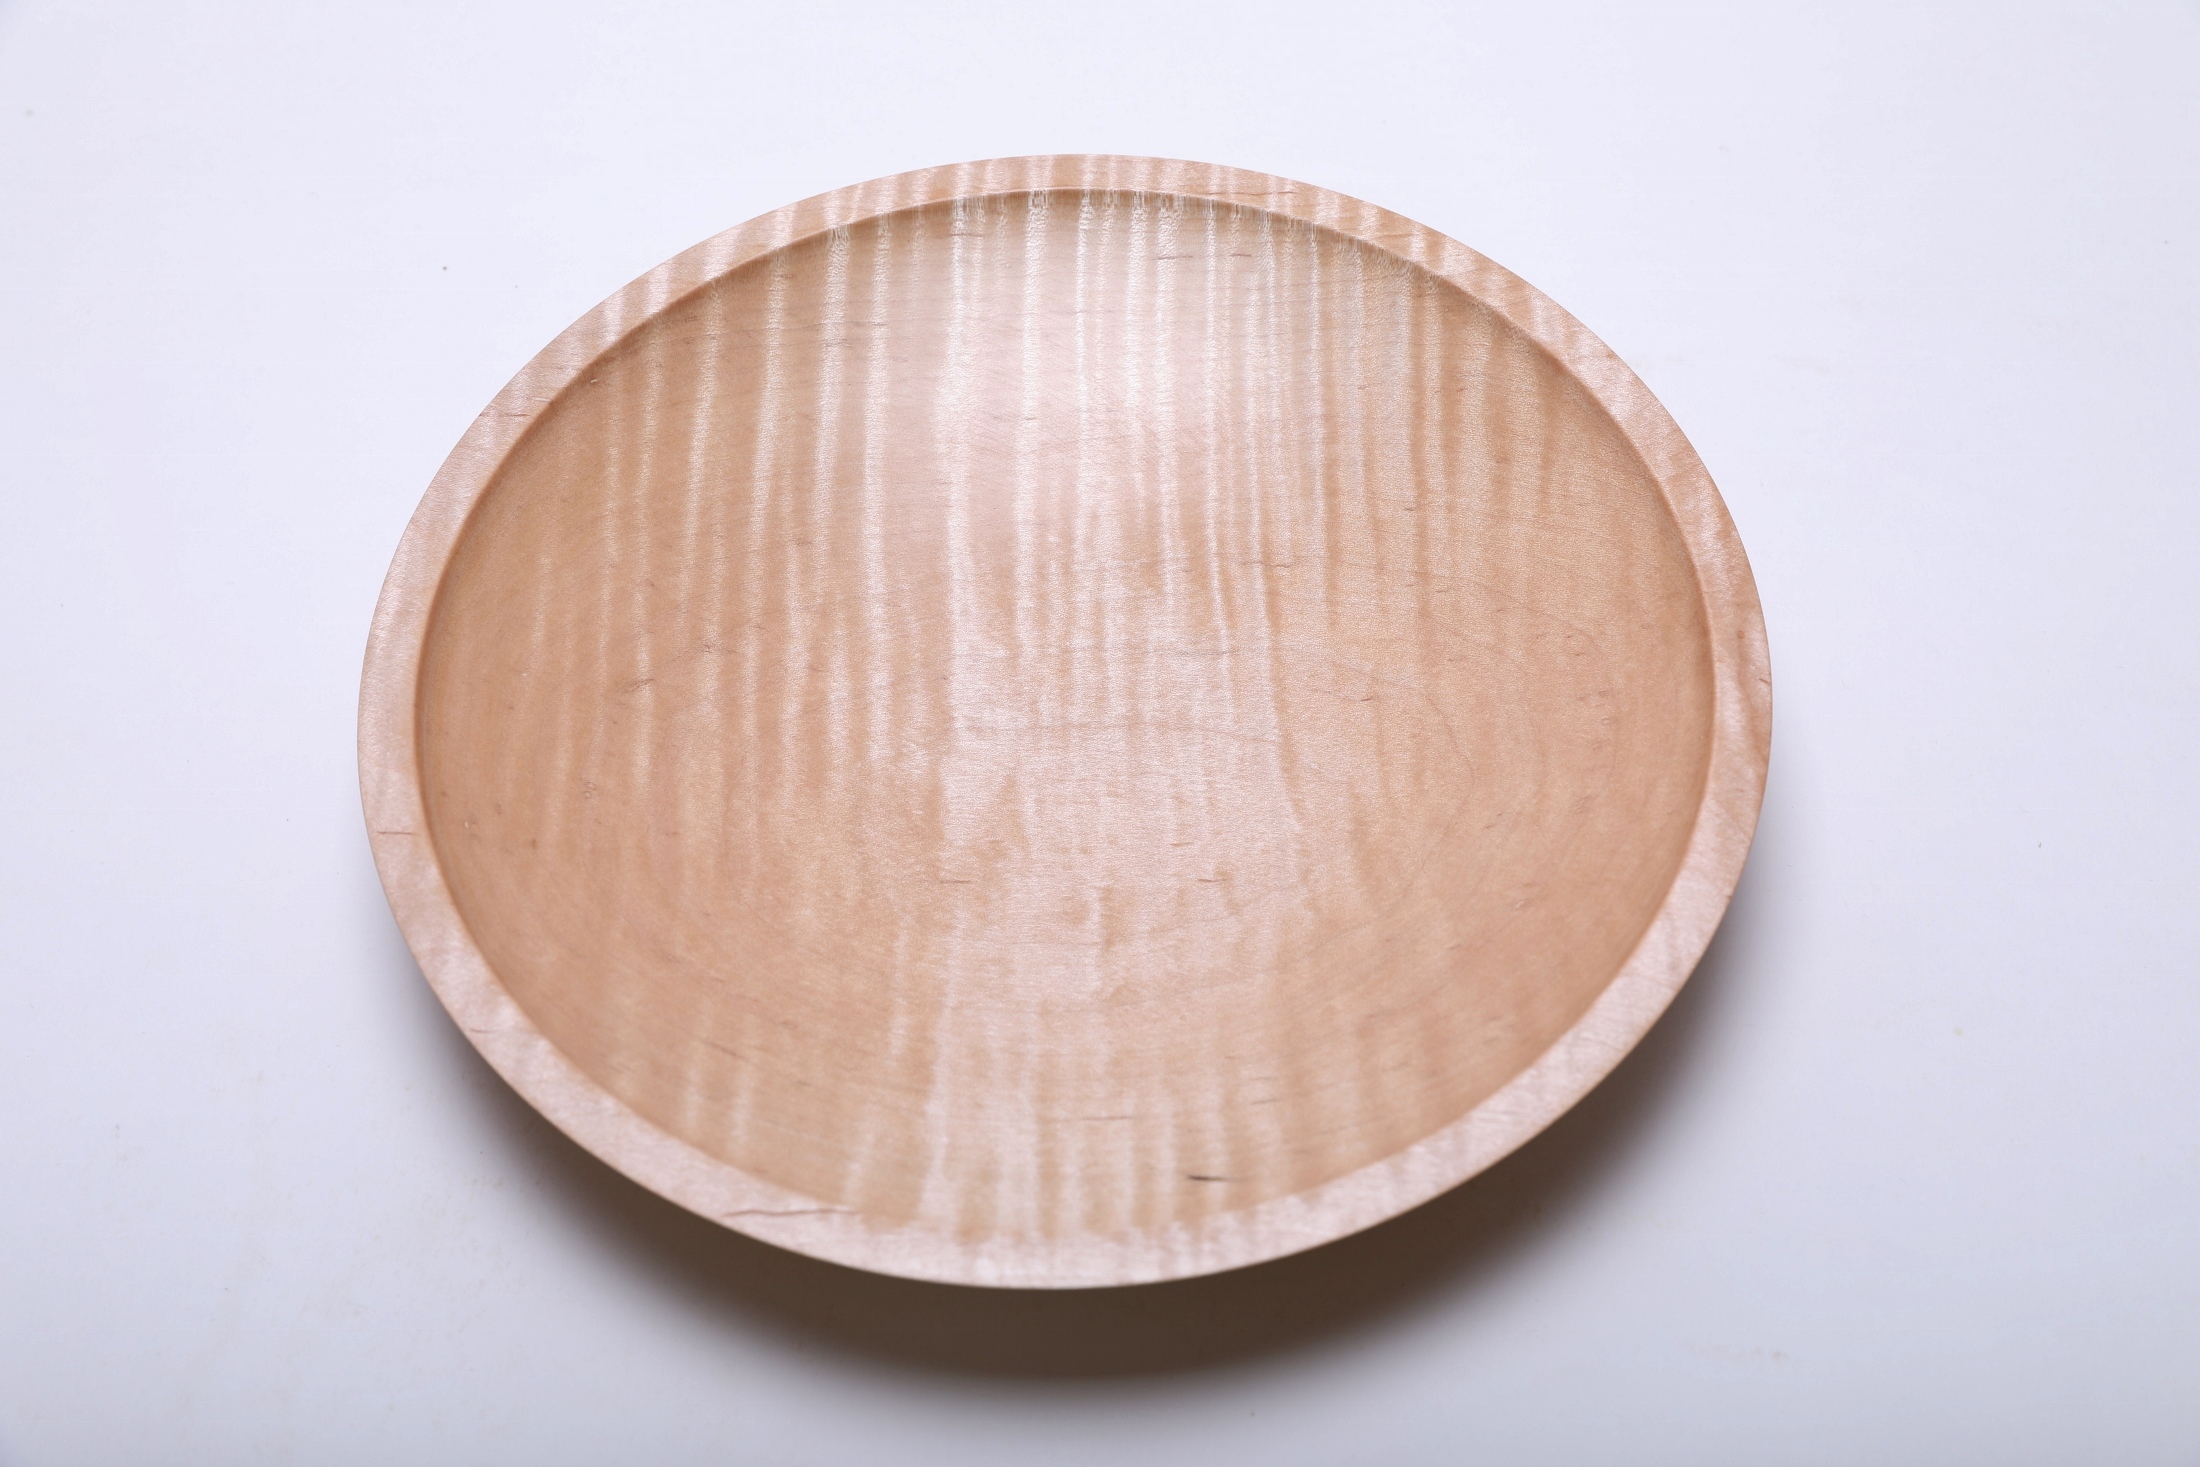 Fiddleback Maple bowl